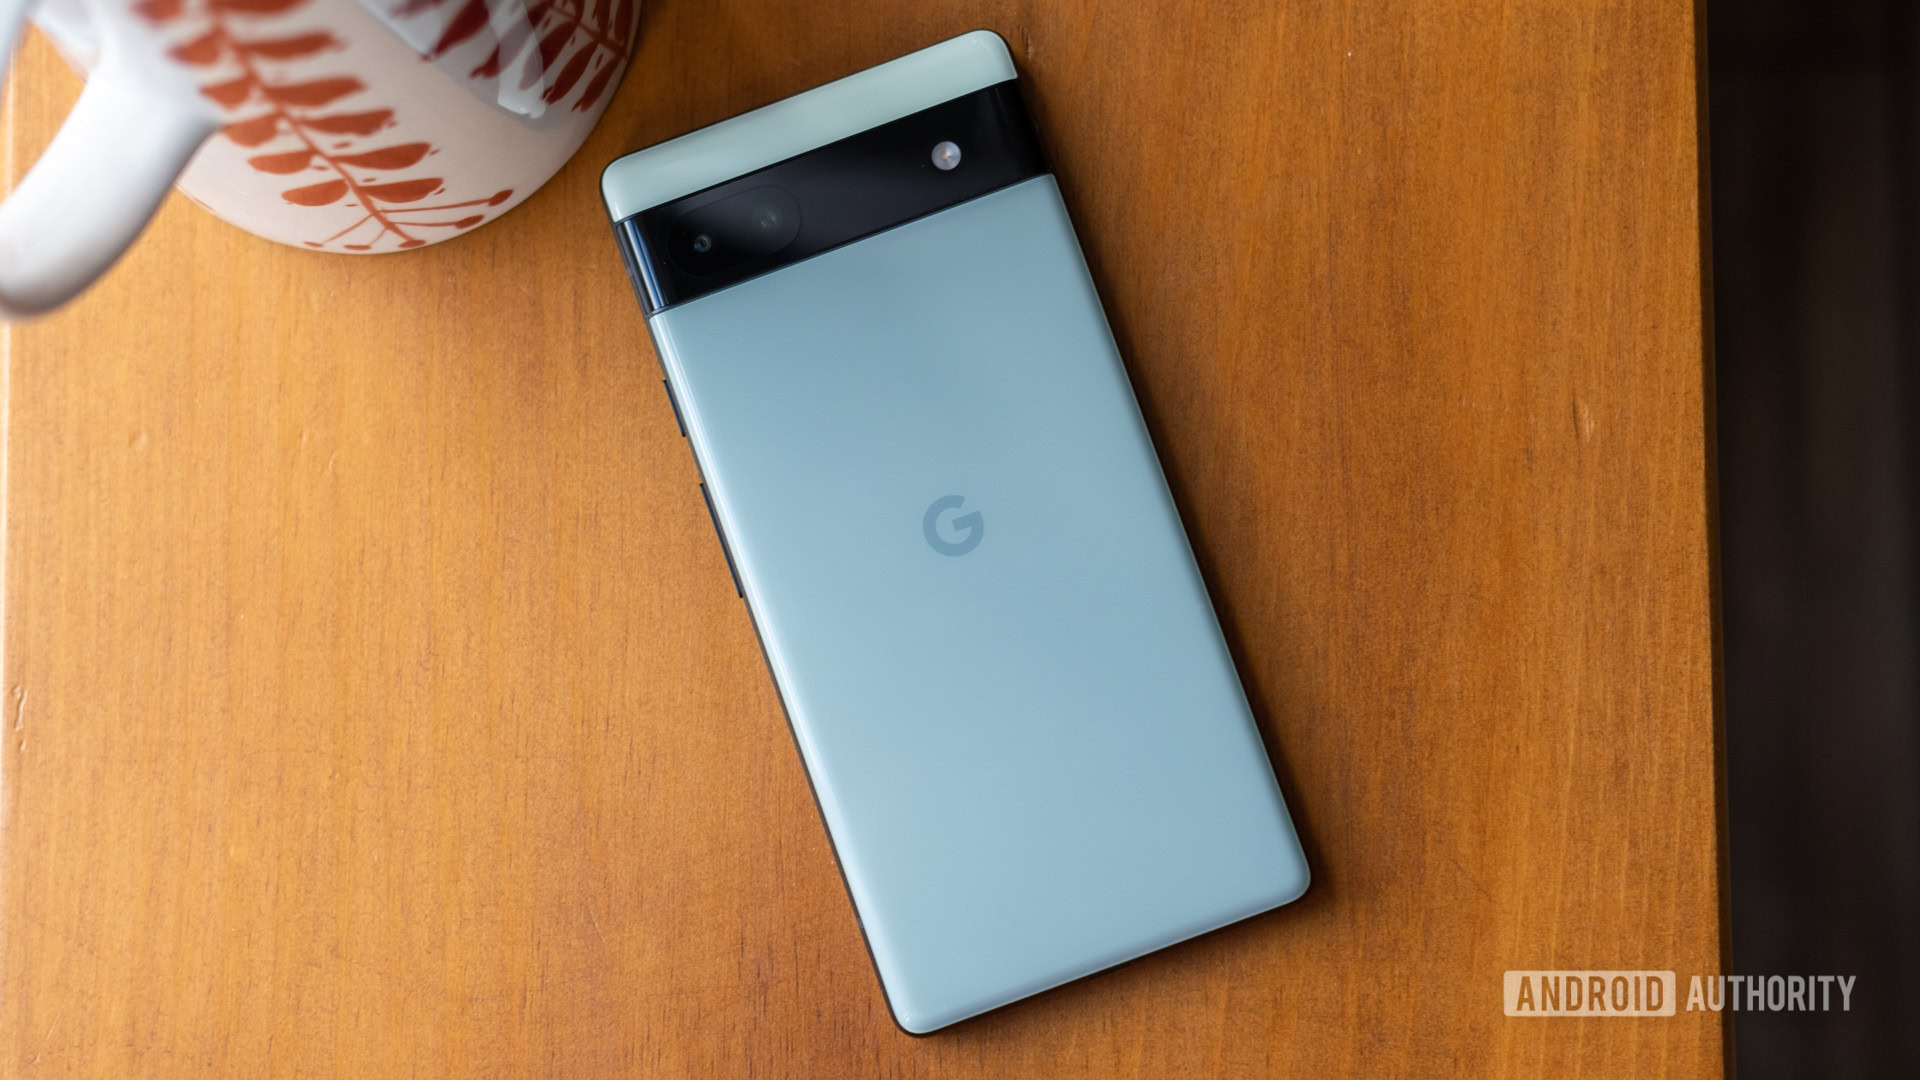 Google Pixel 7a 5G (Charcoal, 8GB RAM, 128GB Storage)